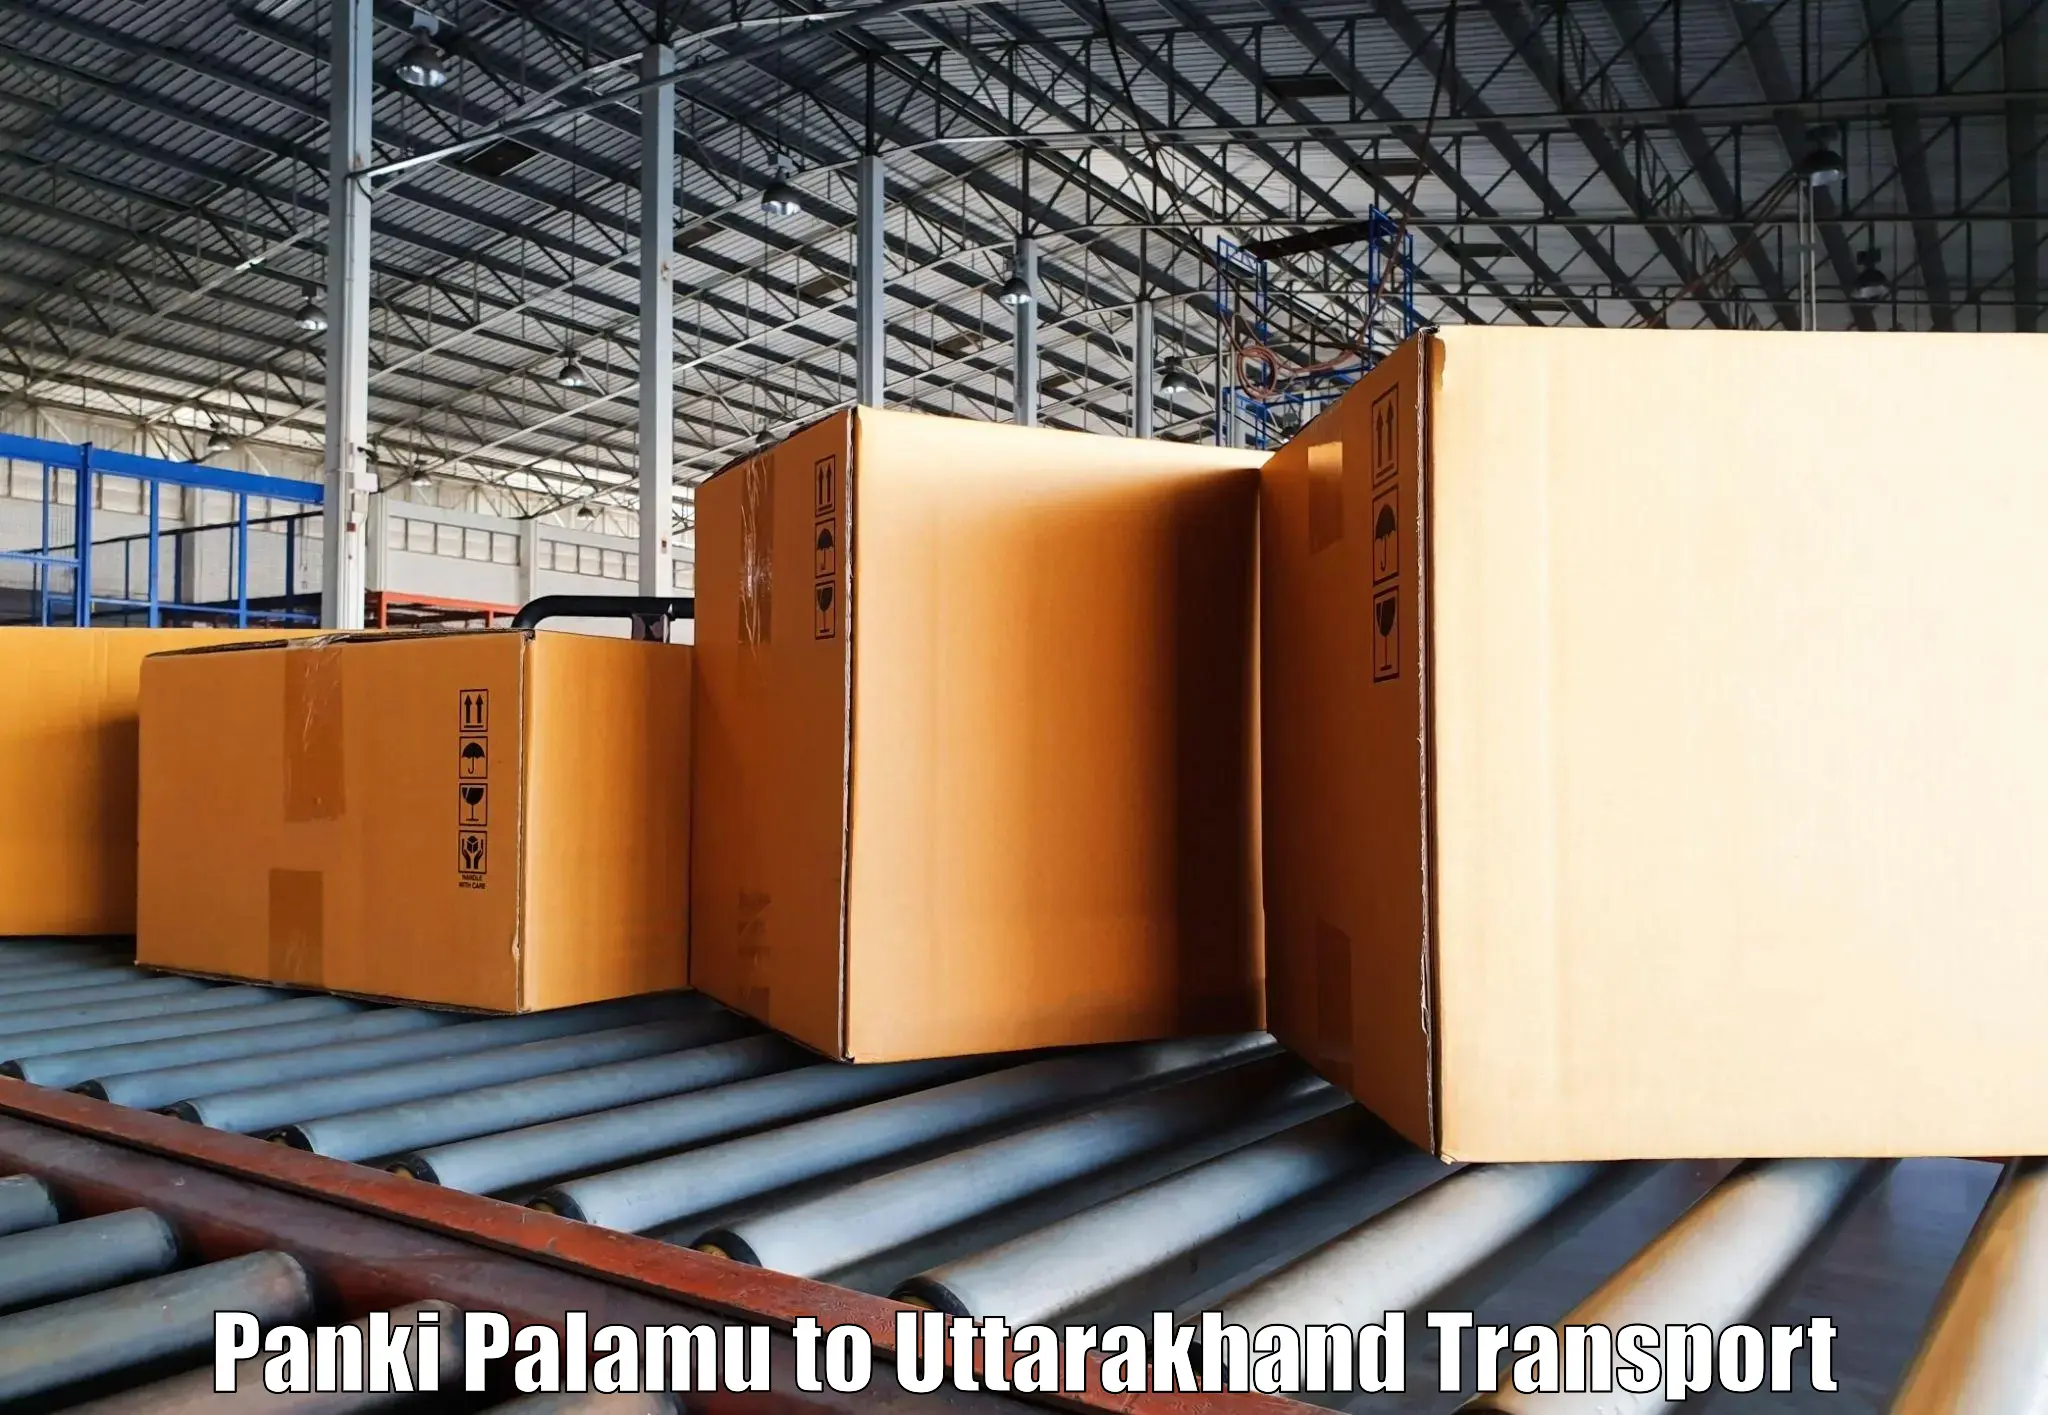 Daily transport service Panki Palamu to Pithoragarh